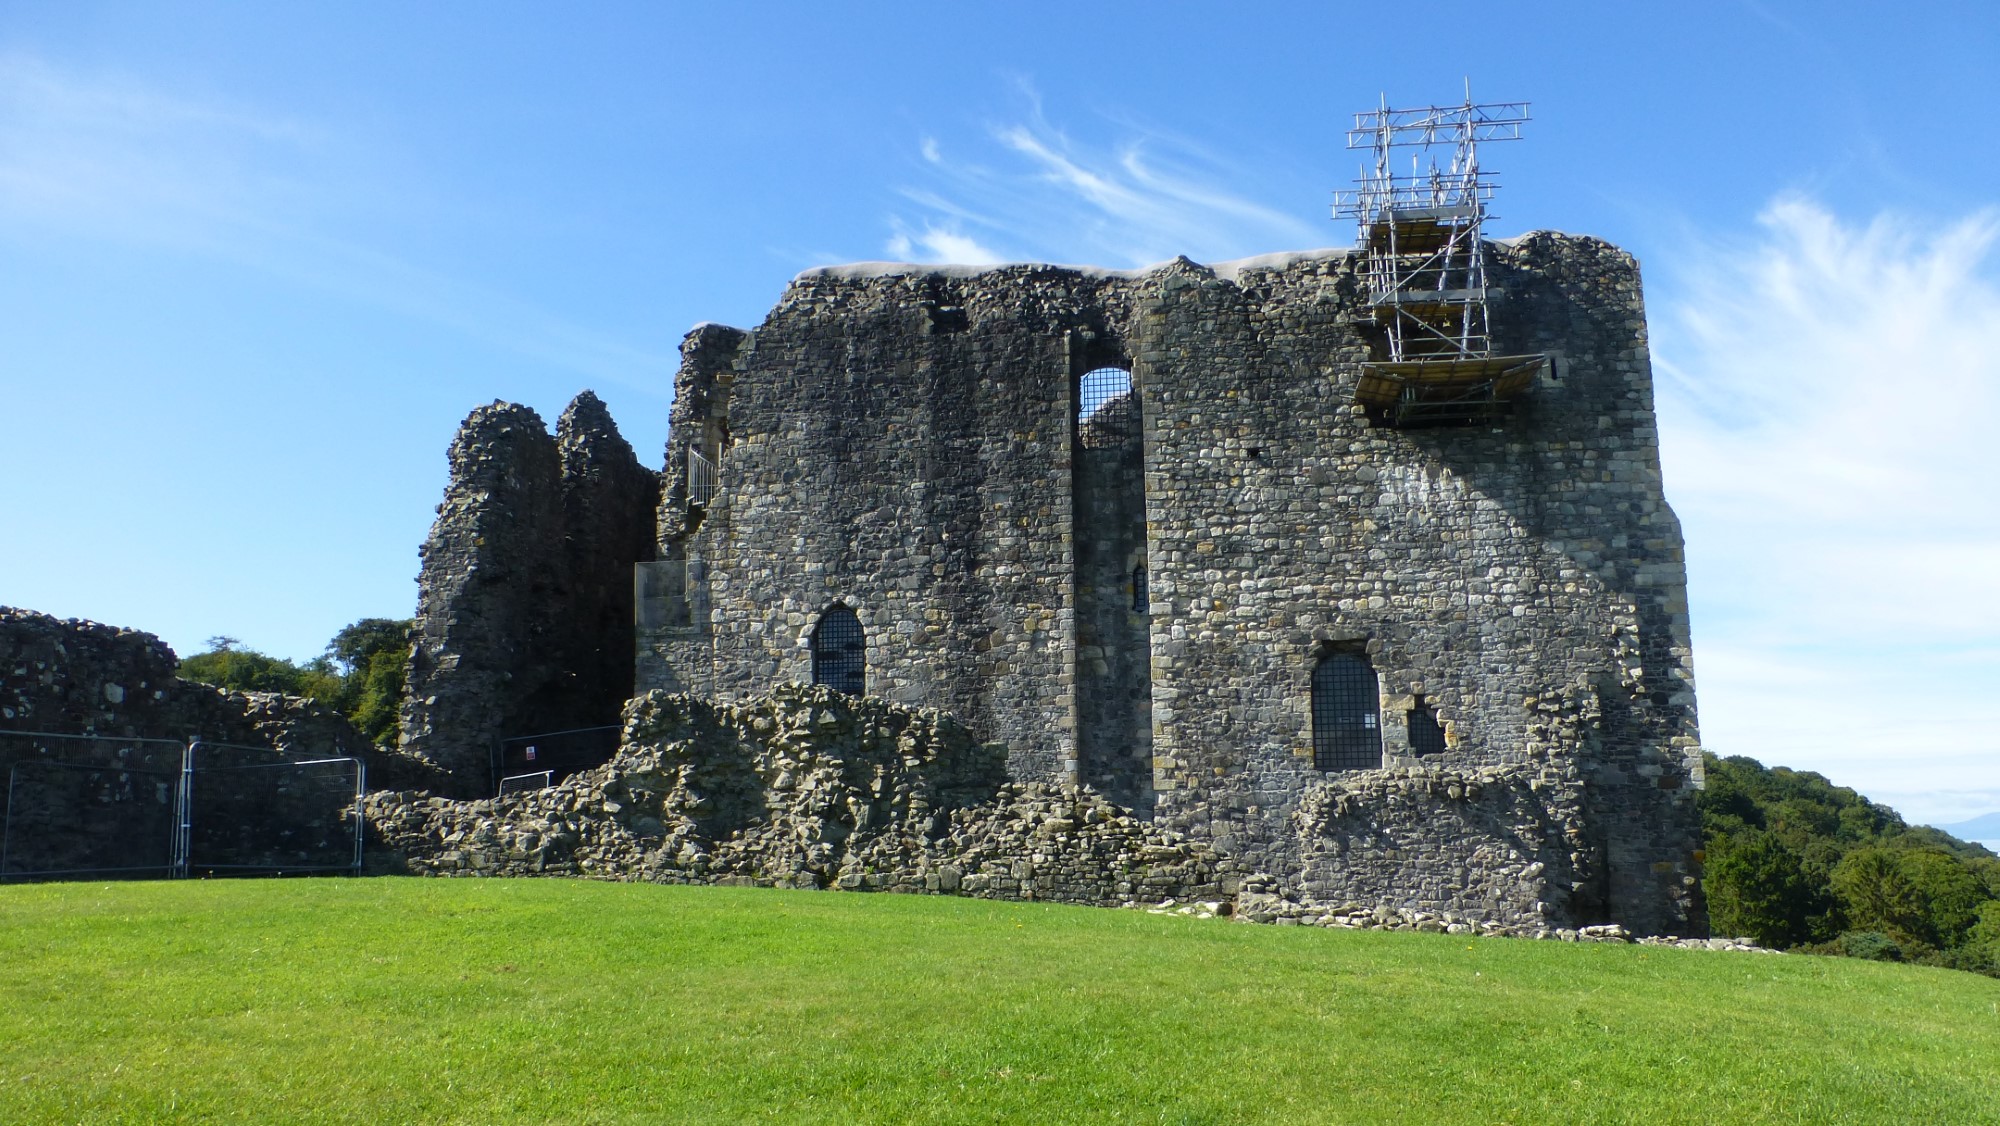 Built for Robert II, Dundonald Castle overlooks the town of Dundonald. (2022)